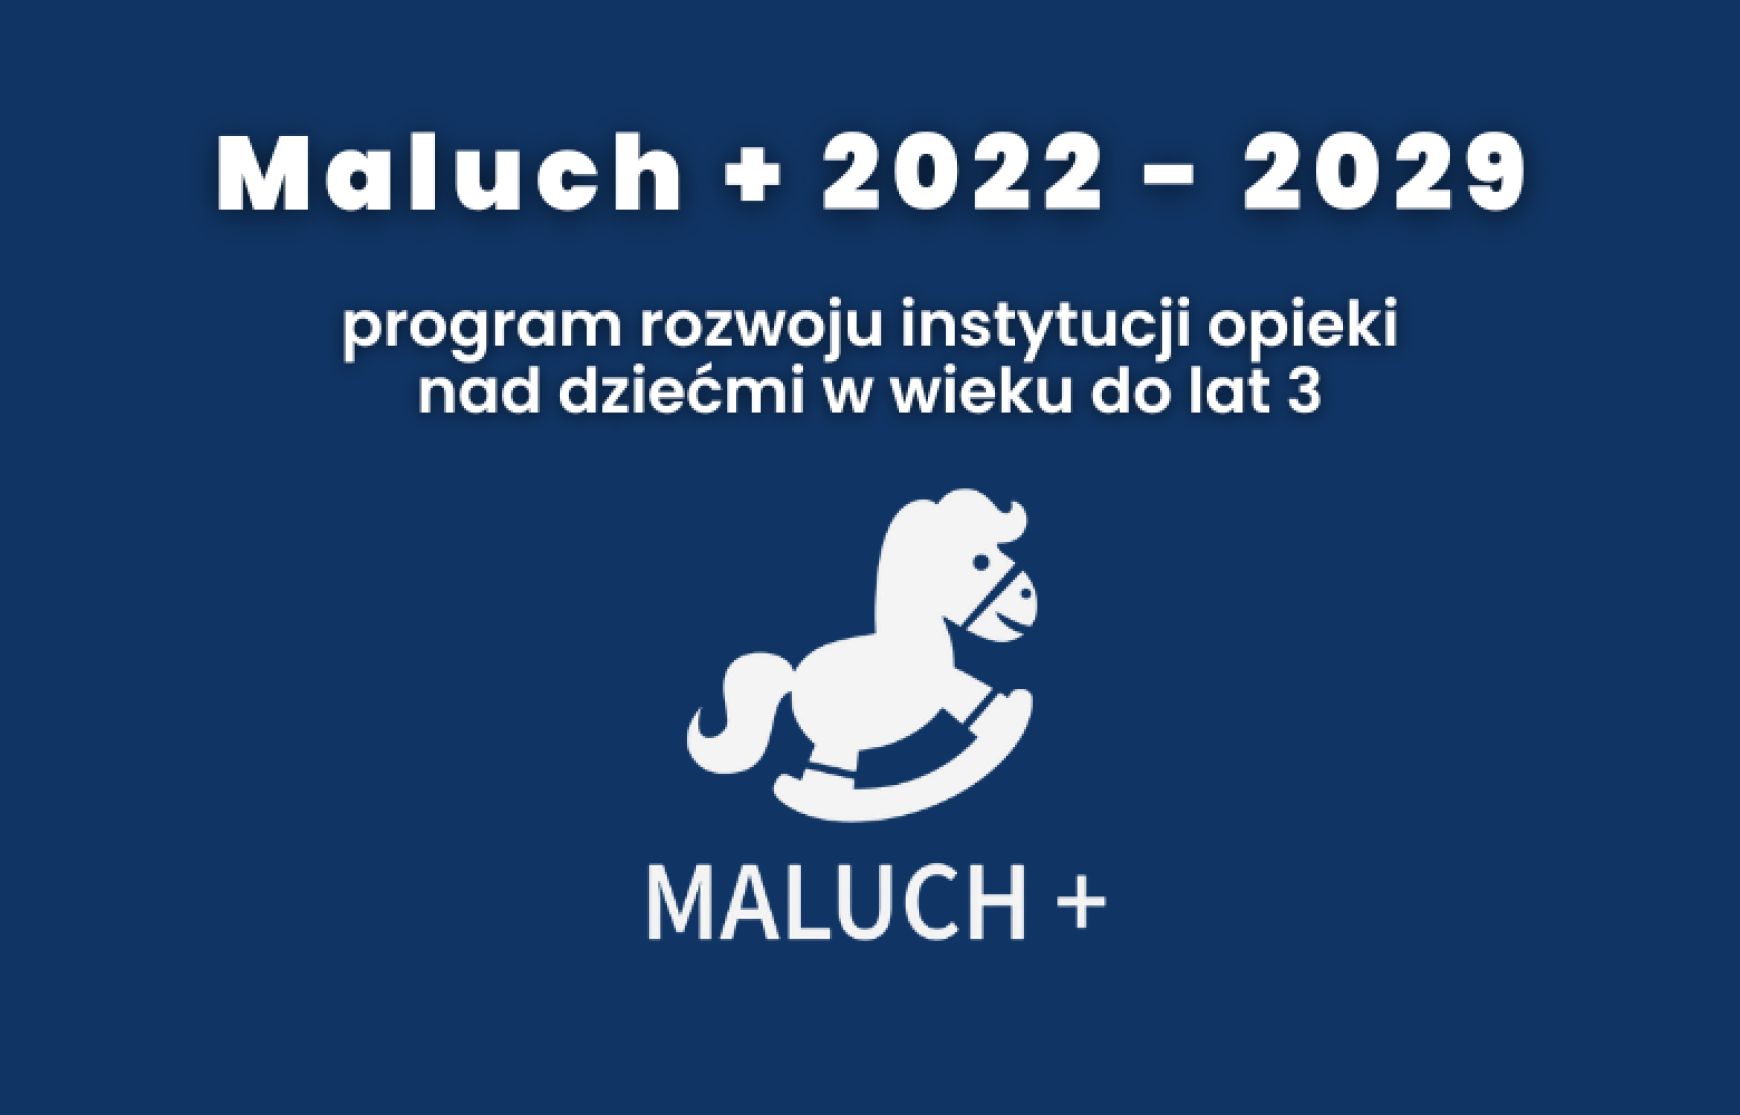 Maluch + 22-29 Utworzenie 20 nowych miejsc opieki nad dziećmi w nowej instytucji pod nazwą Miejski Żłobek w Bukownie